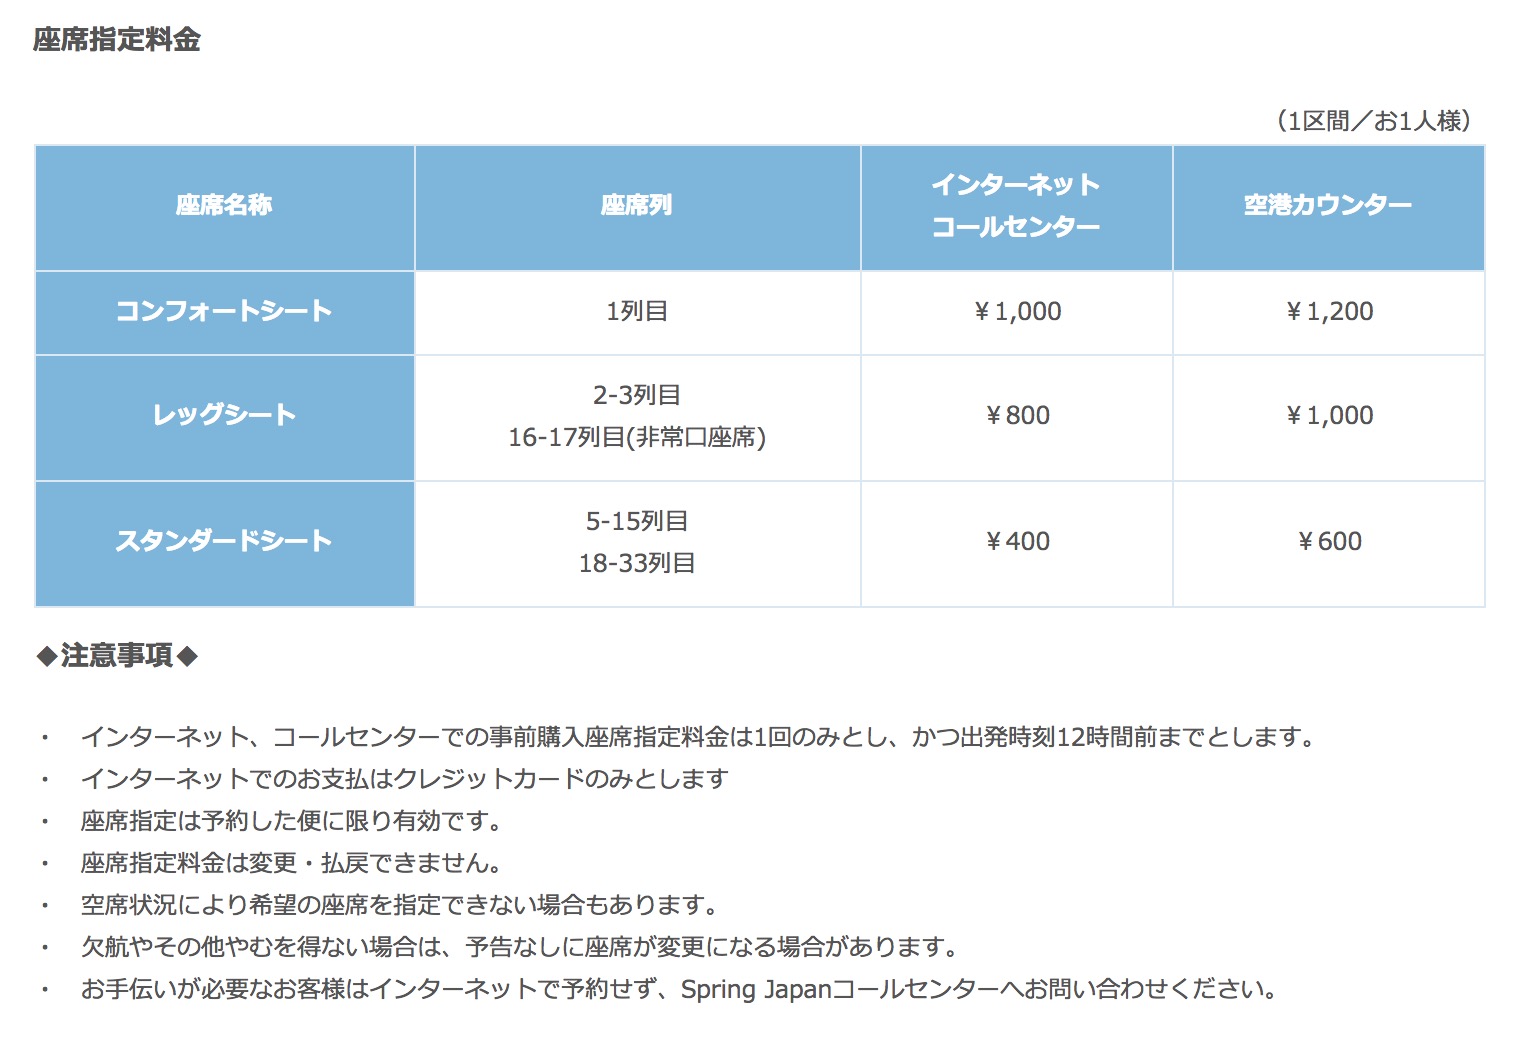 春秋航空日本(SPRING JAPAN)座席指定料金と注意事項